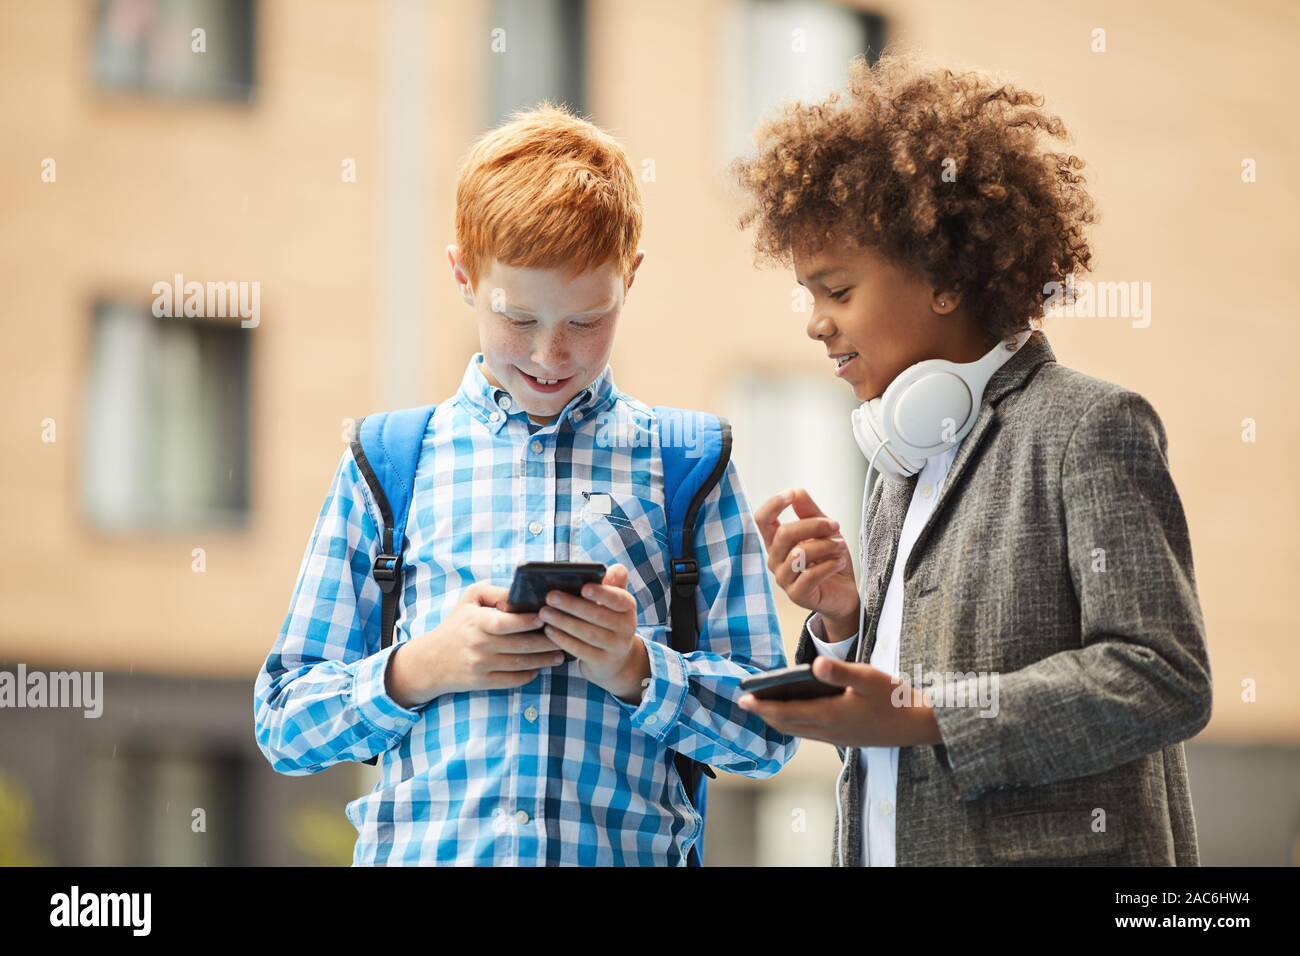 Deux garçons debout avec les téléphones mobiles aborder quelque chose et étudier en ligne à l'extérieur Banque D'Images